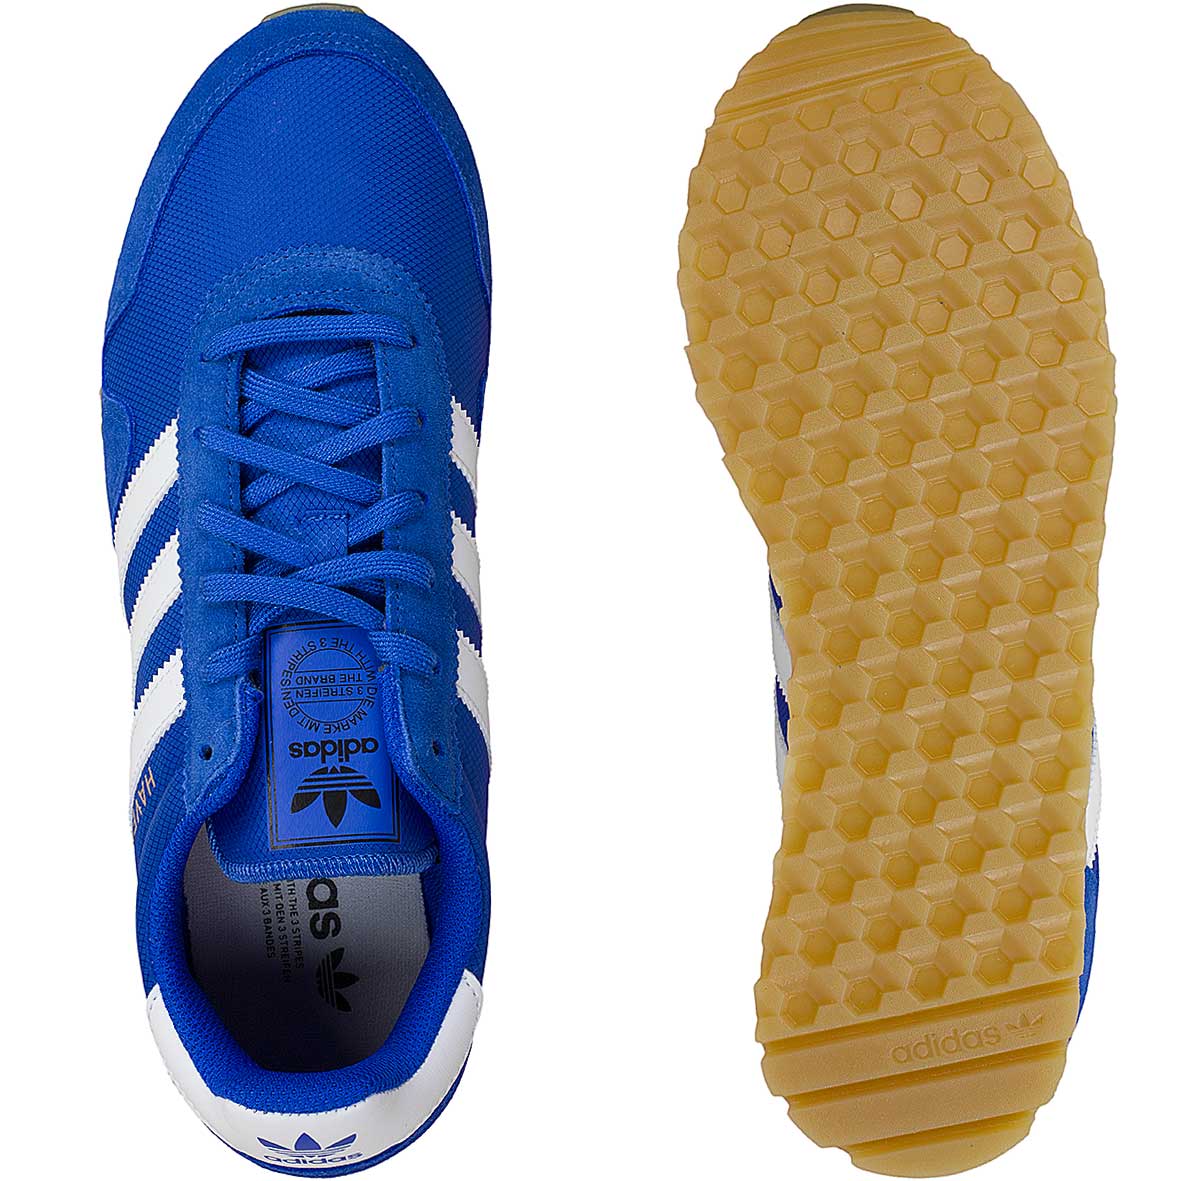 ☆ Adidas Originals Sneaker Haven blau/weiß - hier bestellen!